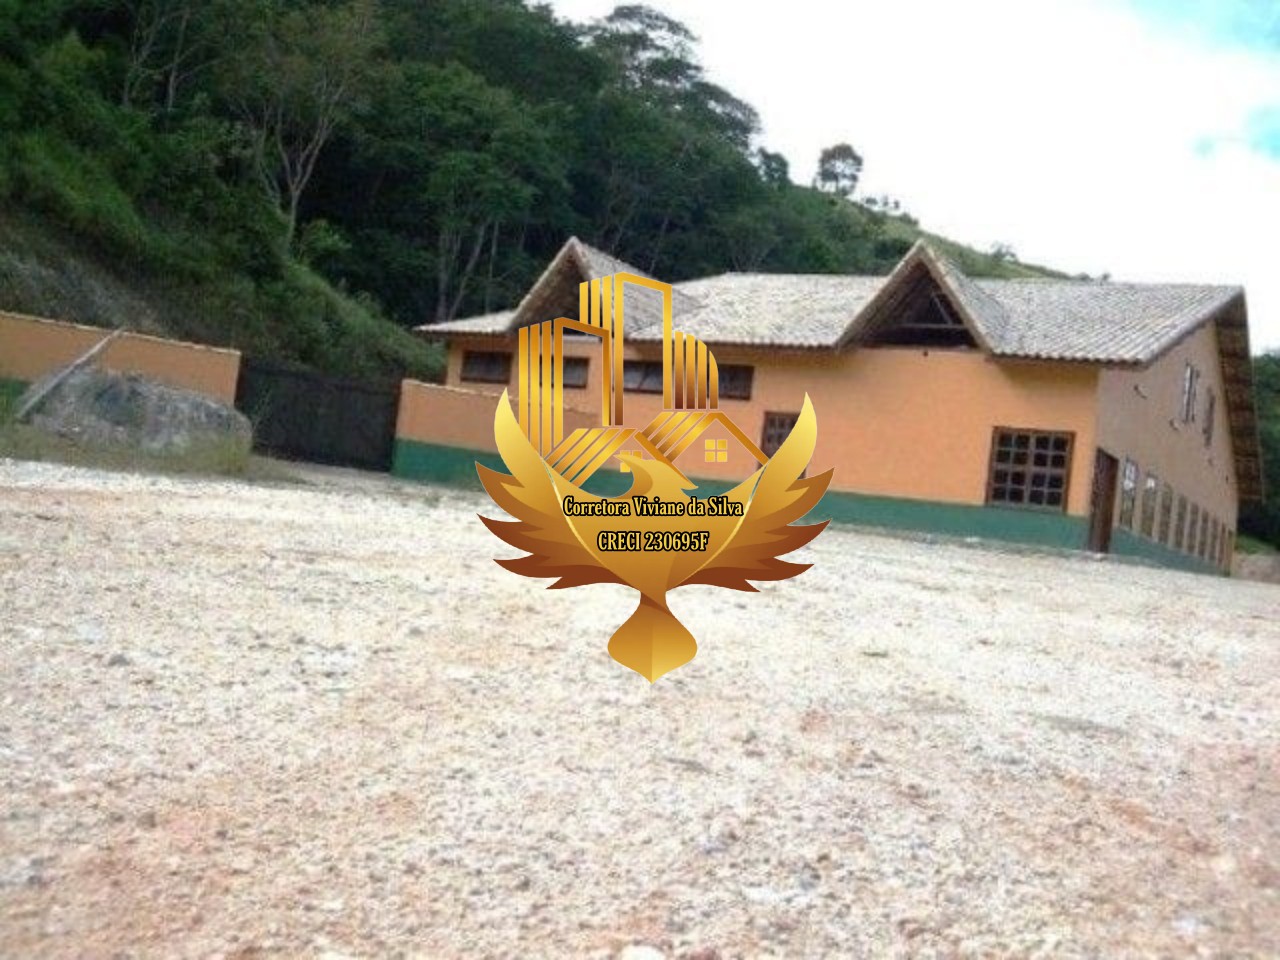 Sítio de 15 ha em São Luiz do Paraitinga, SP